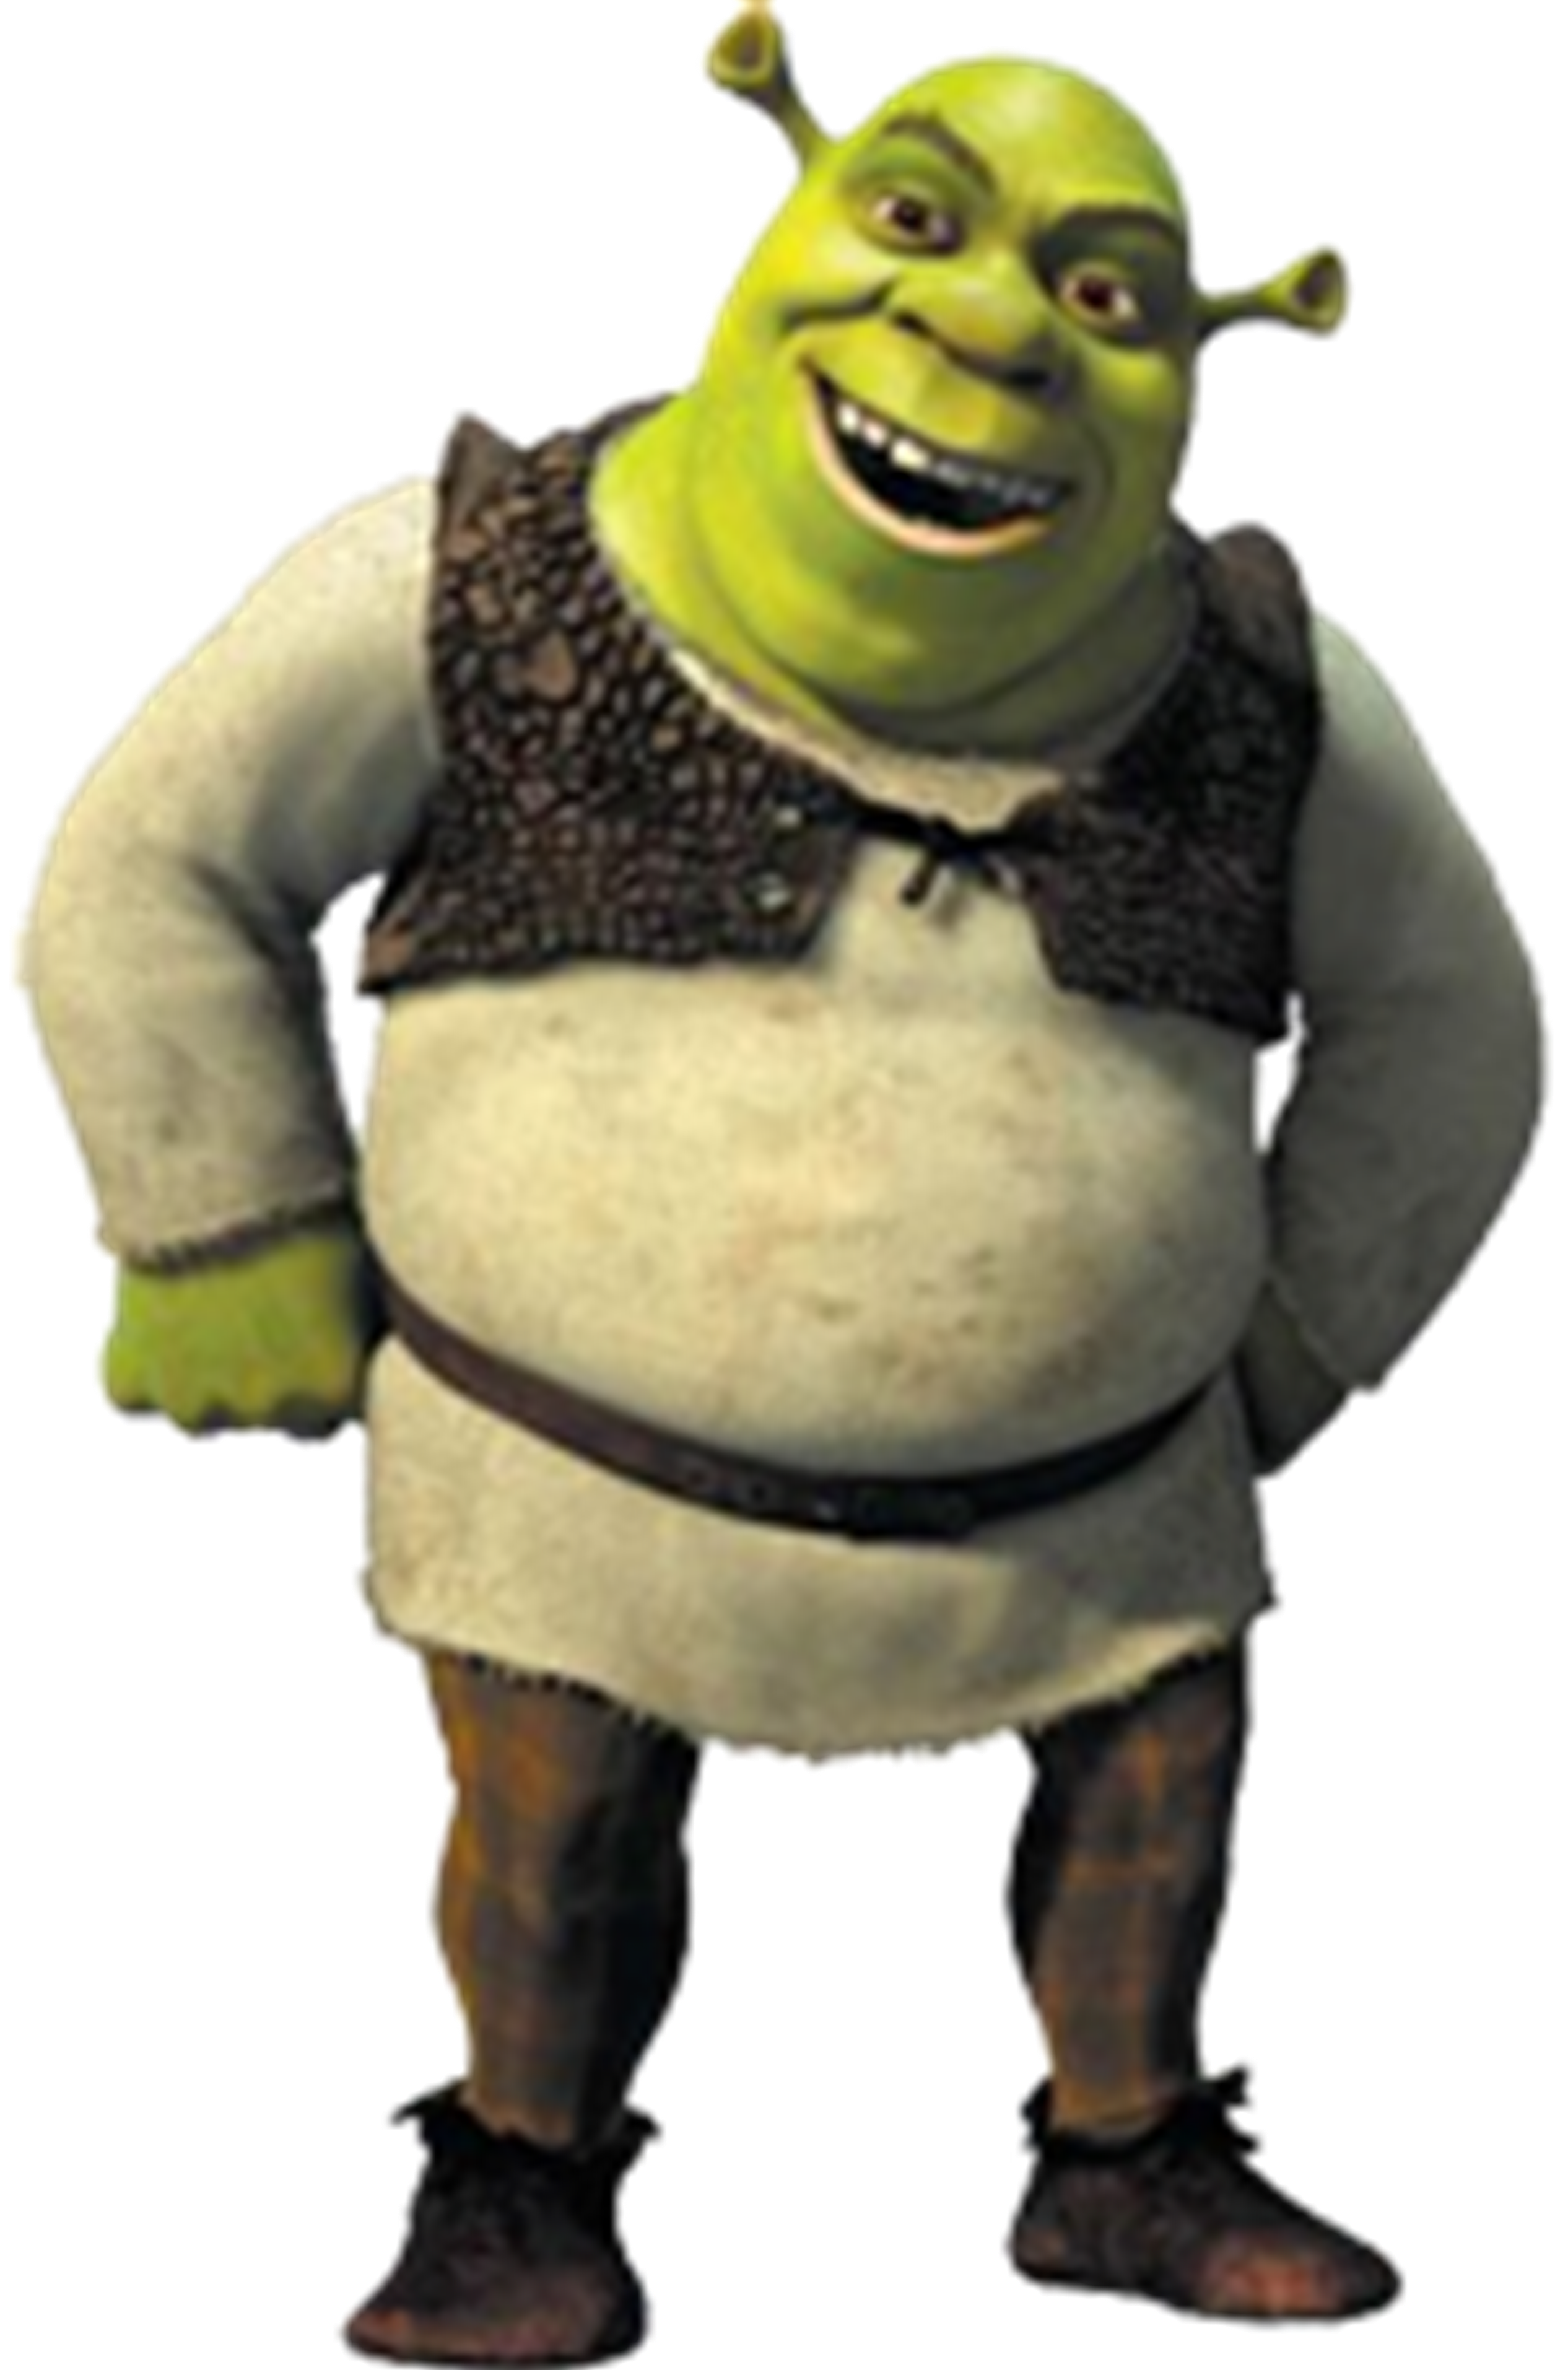 Shrek - Object Redundancy Wiki